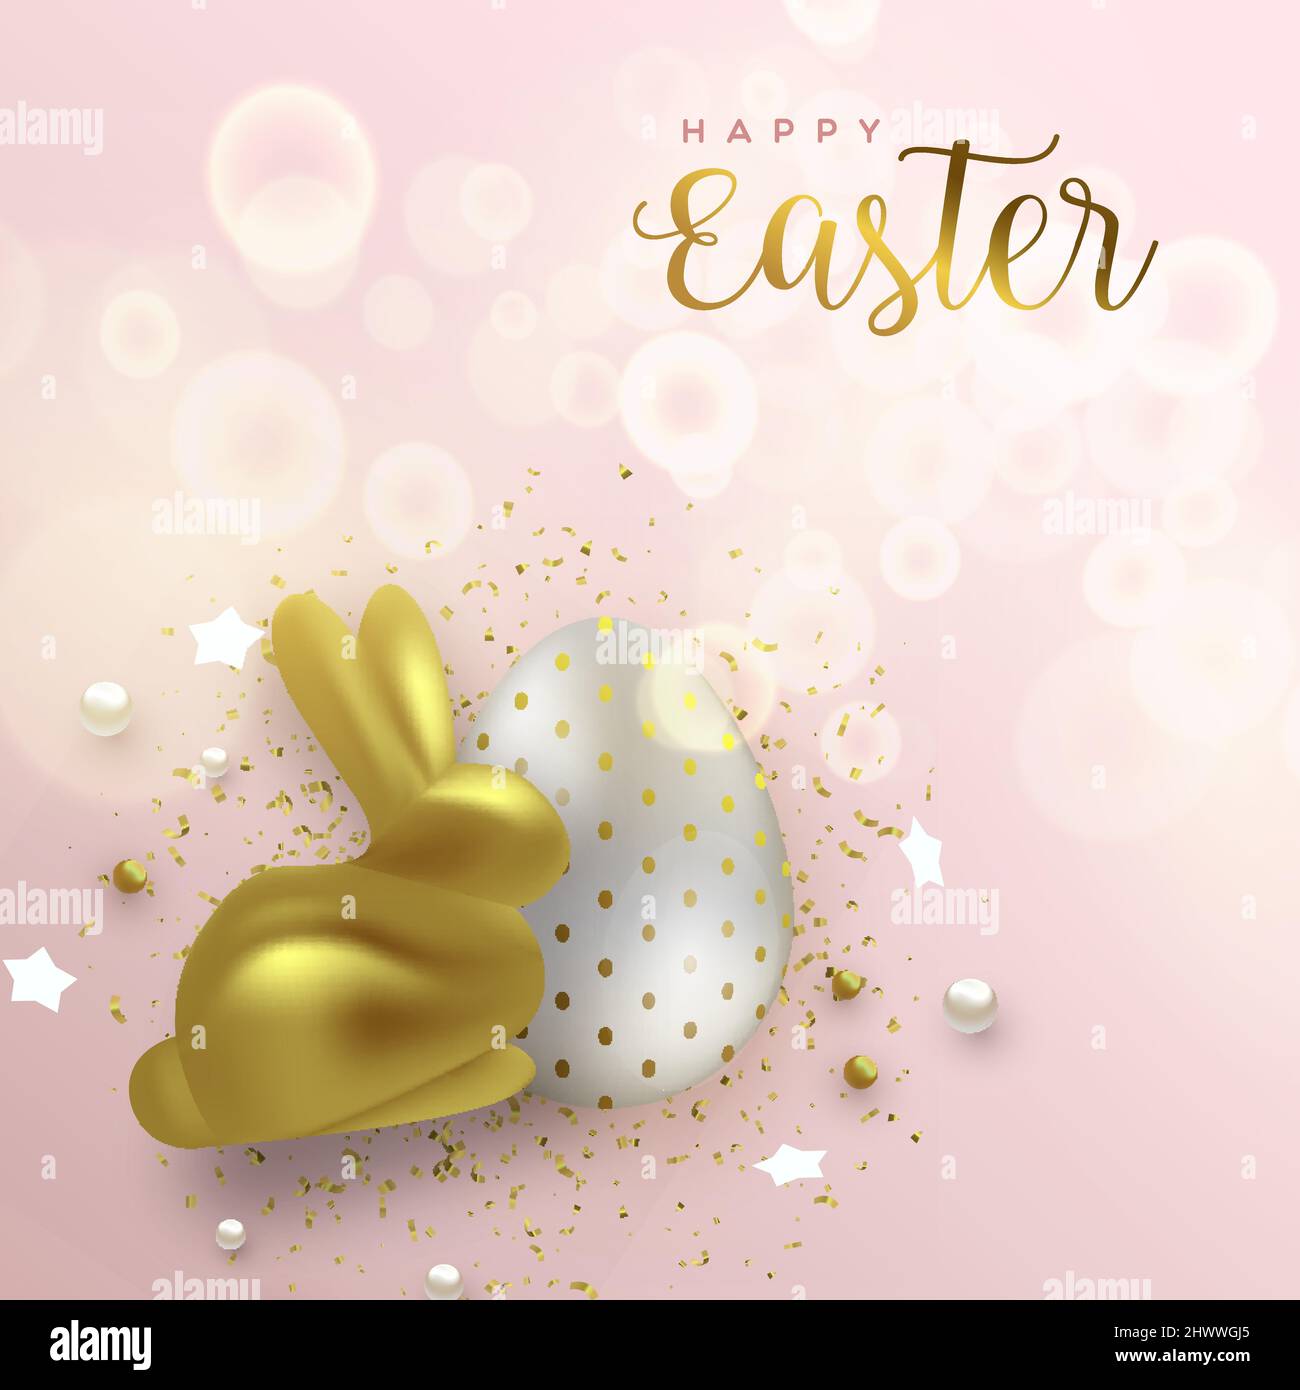 Frohe Ostern Luxus Grußkarte Illustration. Realistisches kaninchen aus 3D Gold mit Ei für traditionelle Frühlingsfeierlichkeiten. Stock Vektor